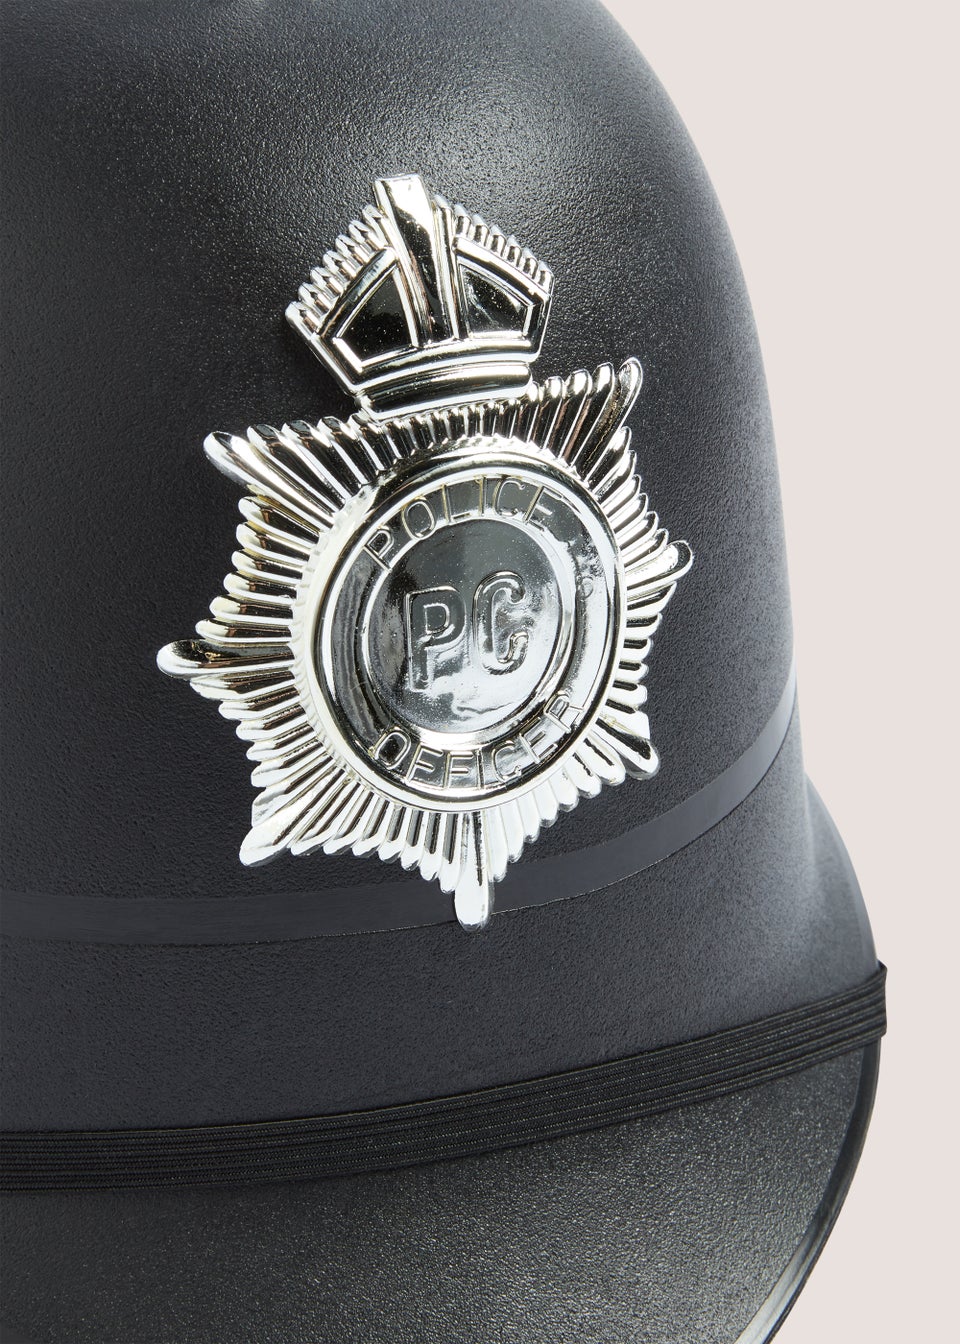 Kids Police Hat (19cm x 27cm x 15cm)